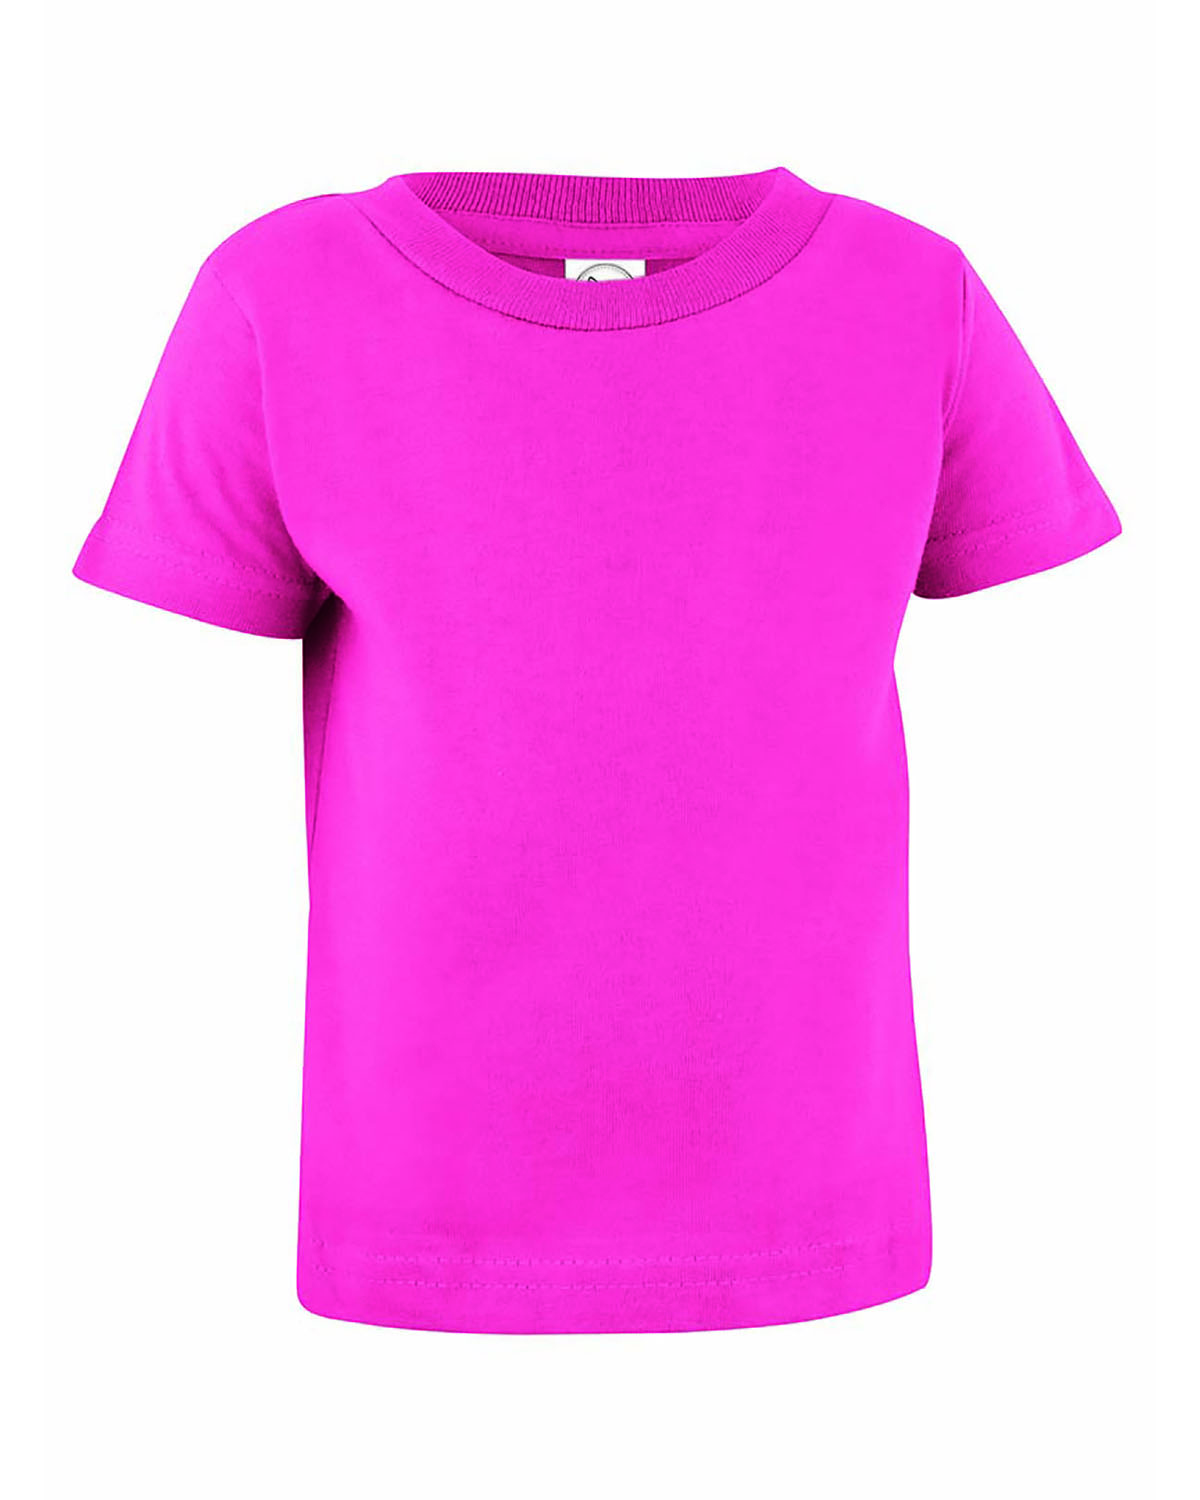 melodie Concessie Nu al Rabbit Skins 3401 Infant Cotton Jersey T-Shirt | JiffyShirts